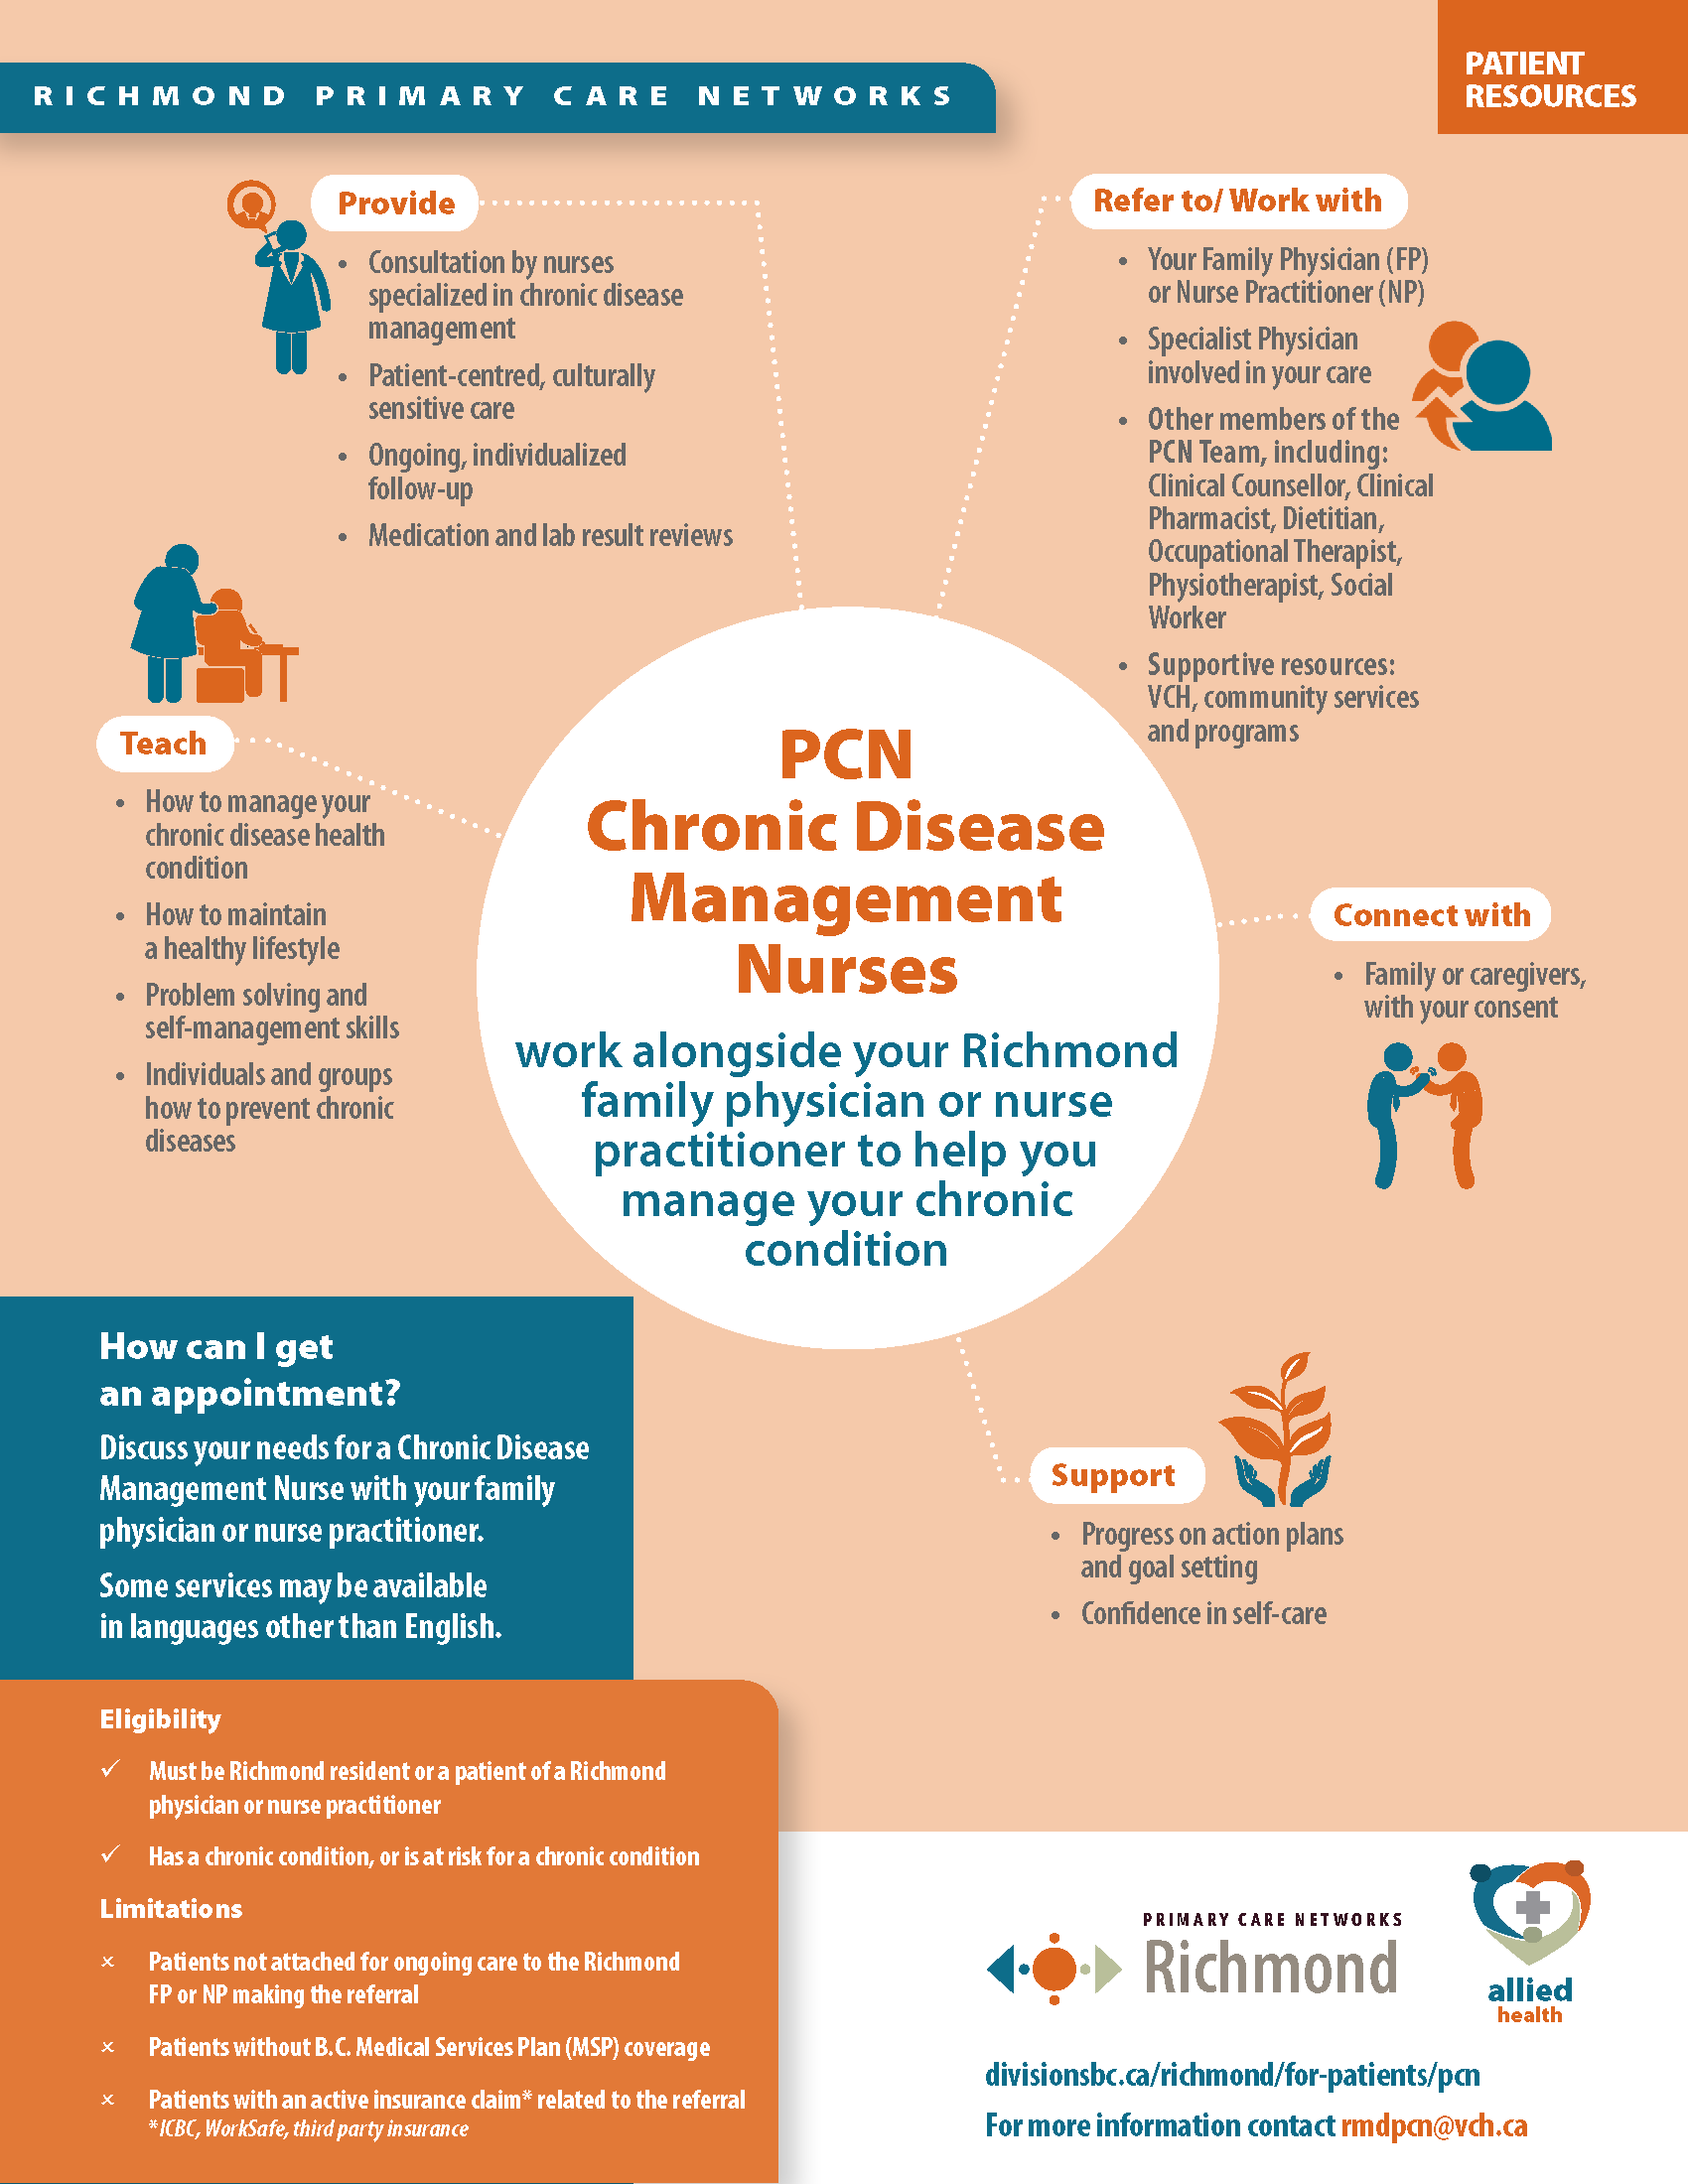 PCN Chronic Disease Management Nurses - overview (patient handout).png